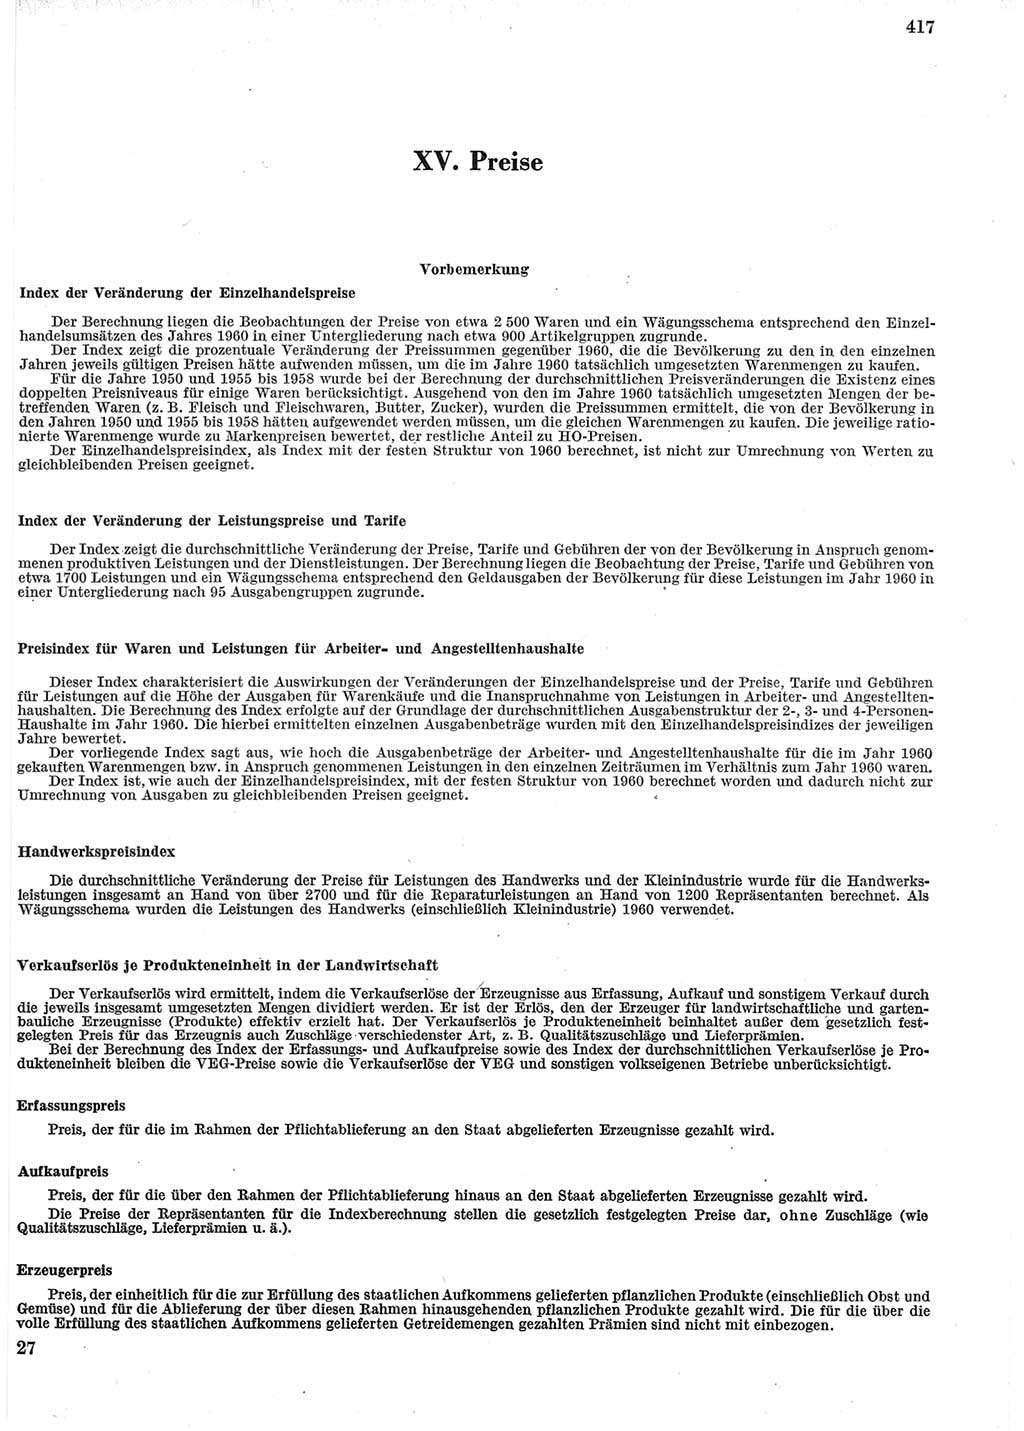 Statistisches Jahrbuch der Deutschen Demokratischen Republik (DDR) 1965, Seite 417 (Stat. Jb. DDR 1965, S. 417)